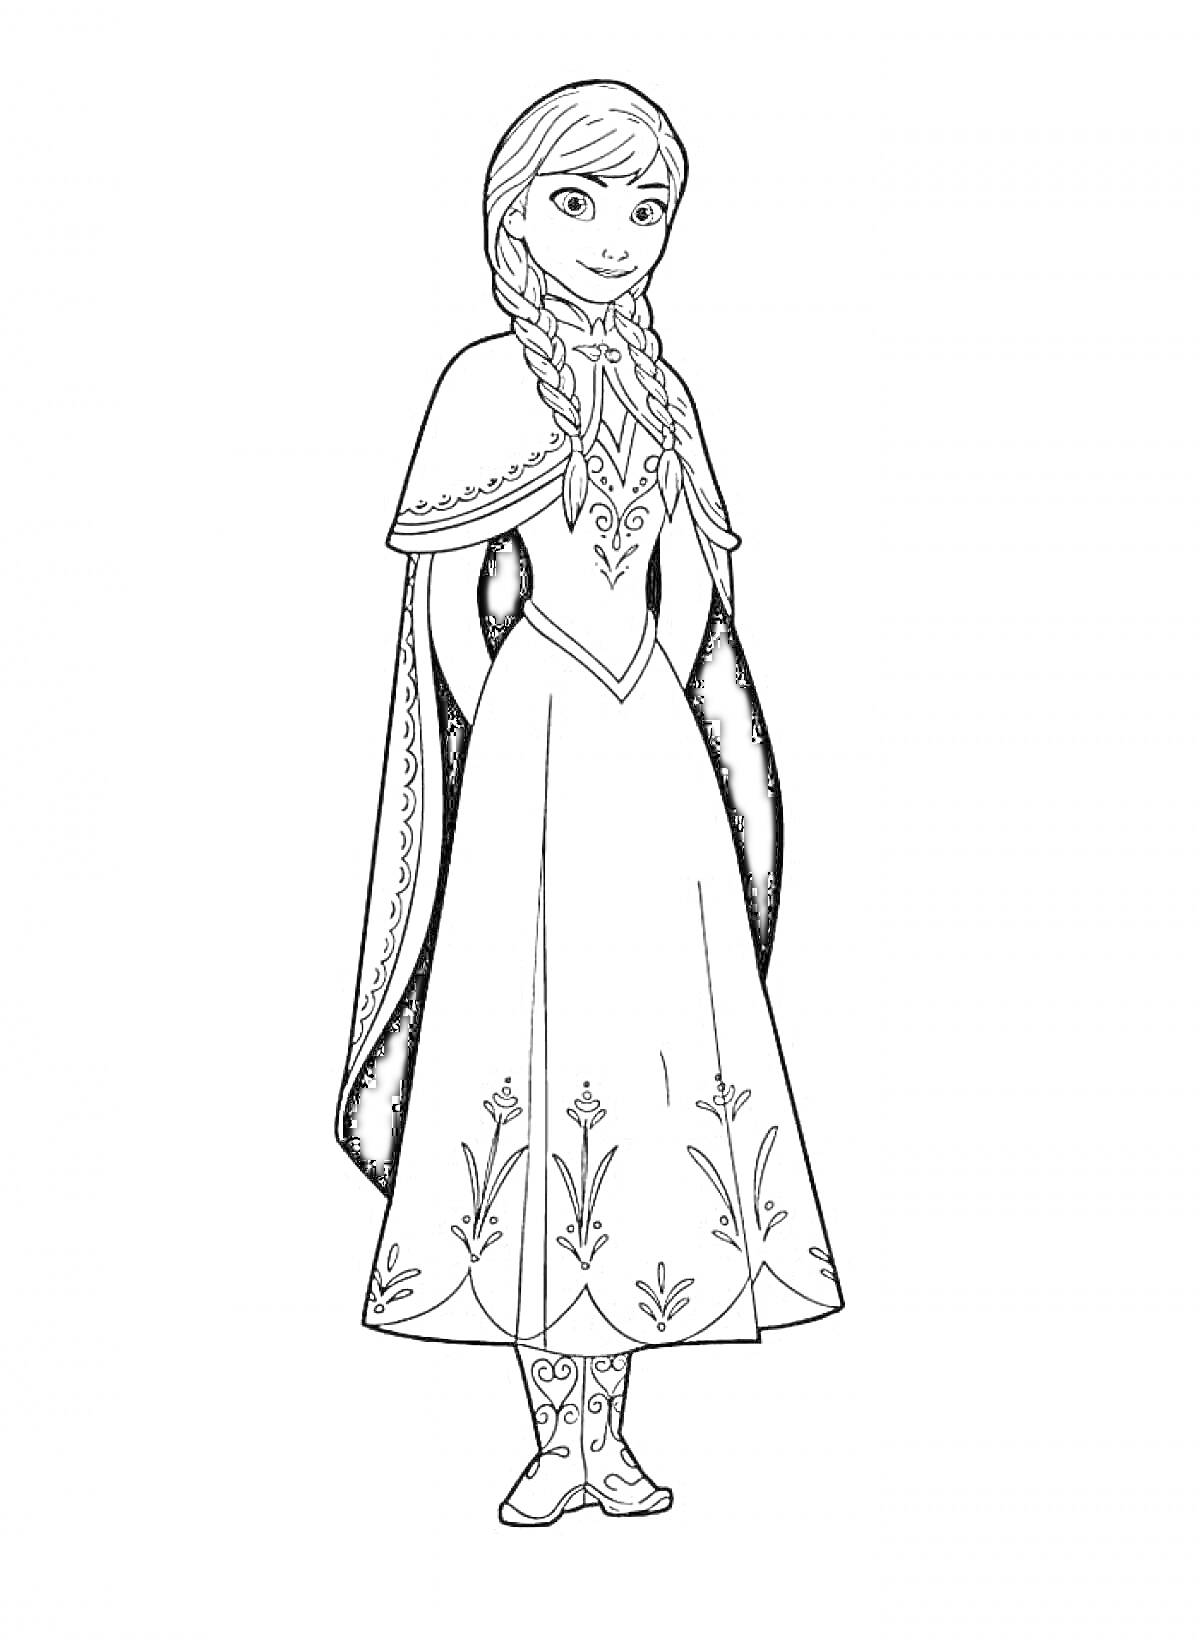 Раскраска Принцесса в платье с длинными рукавами и плащом, со сложной прической с двумя косами, узорами на платье и ботинках